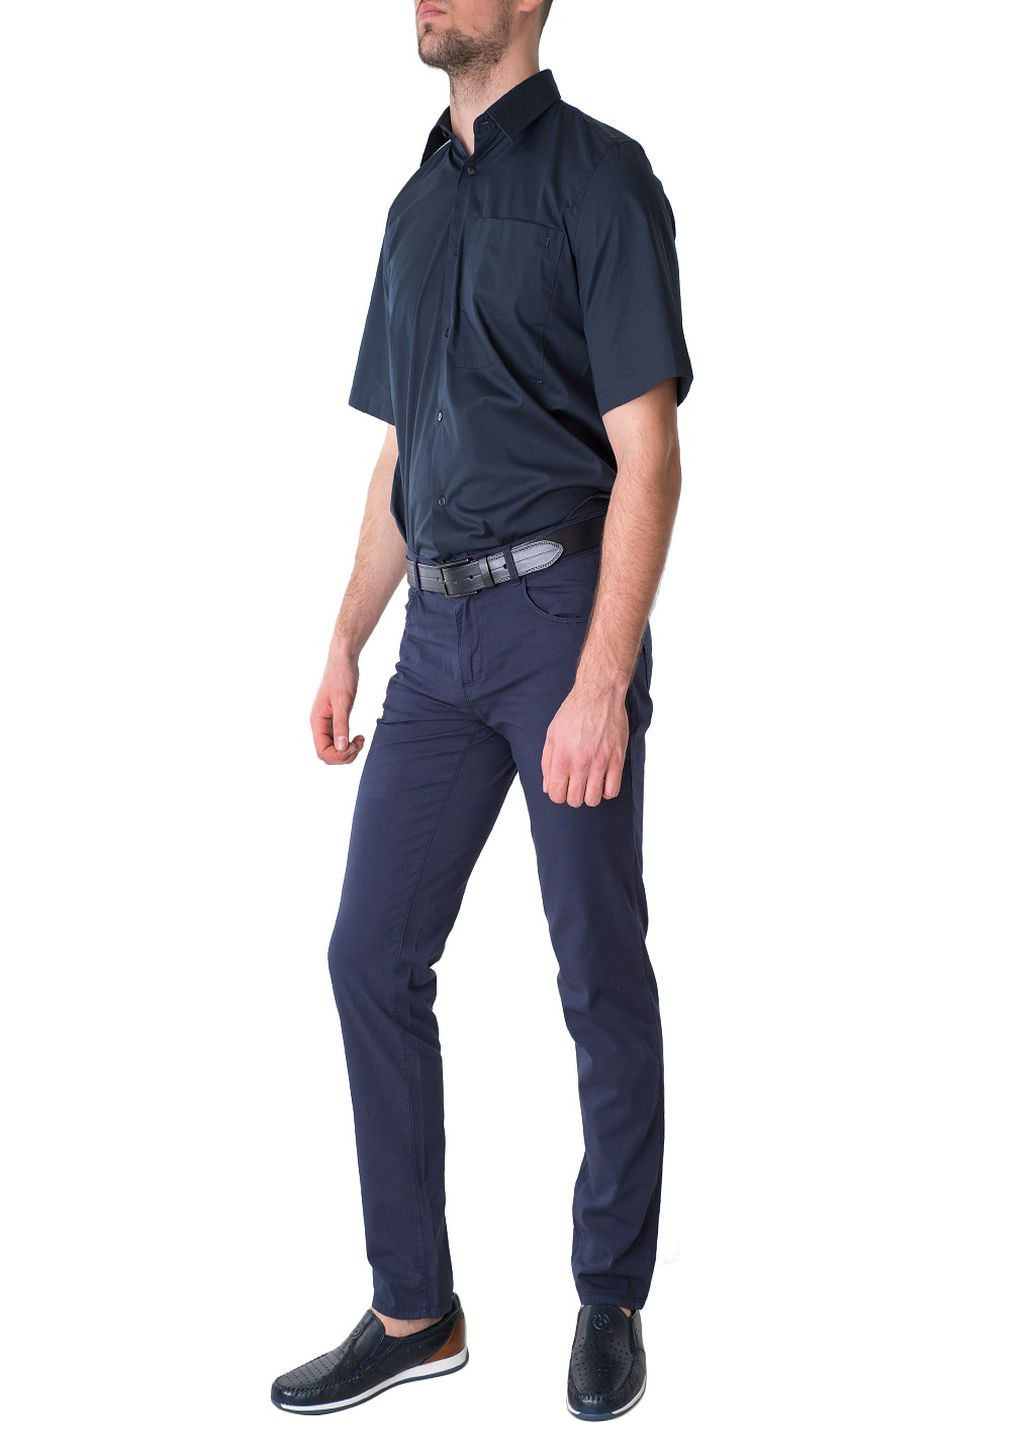 Синяя рубашка однотонная Trussardi Jeans